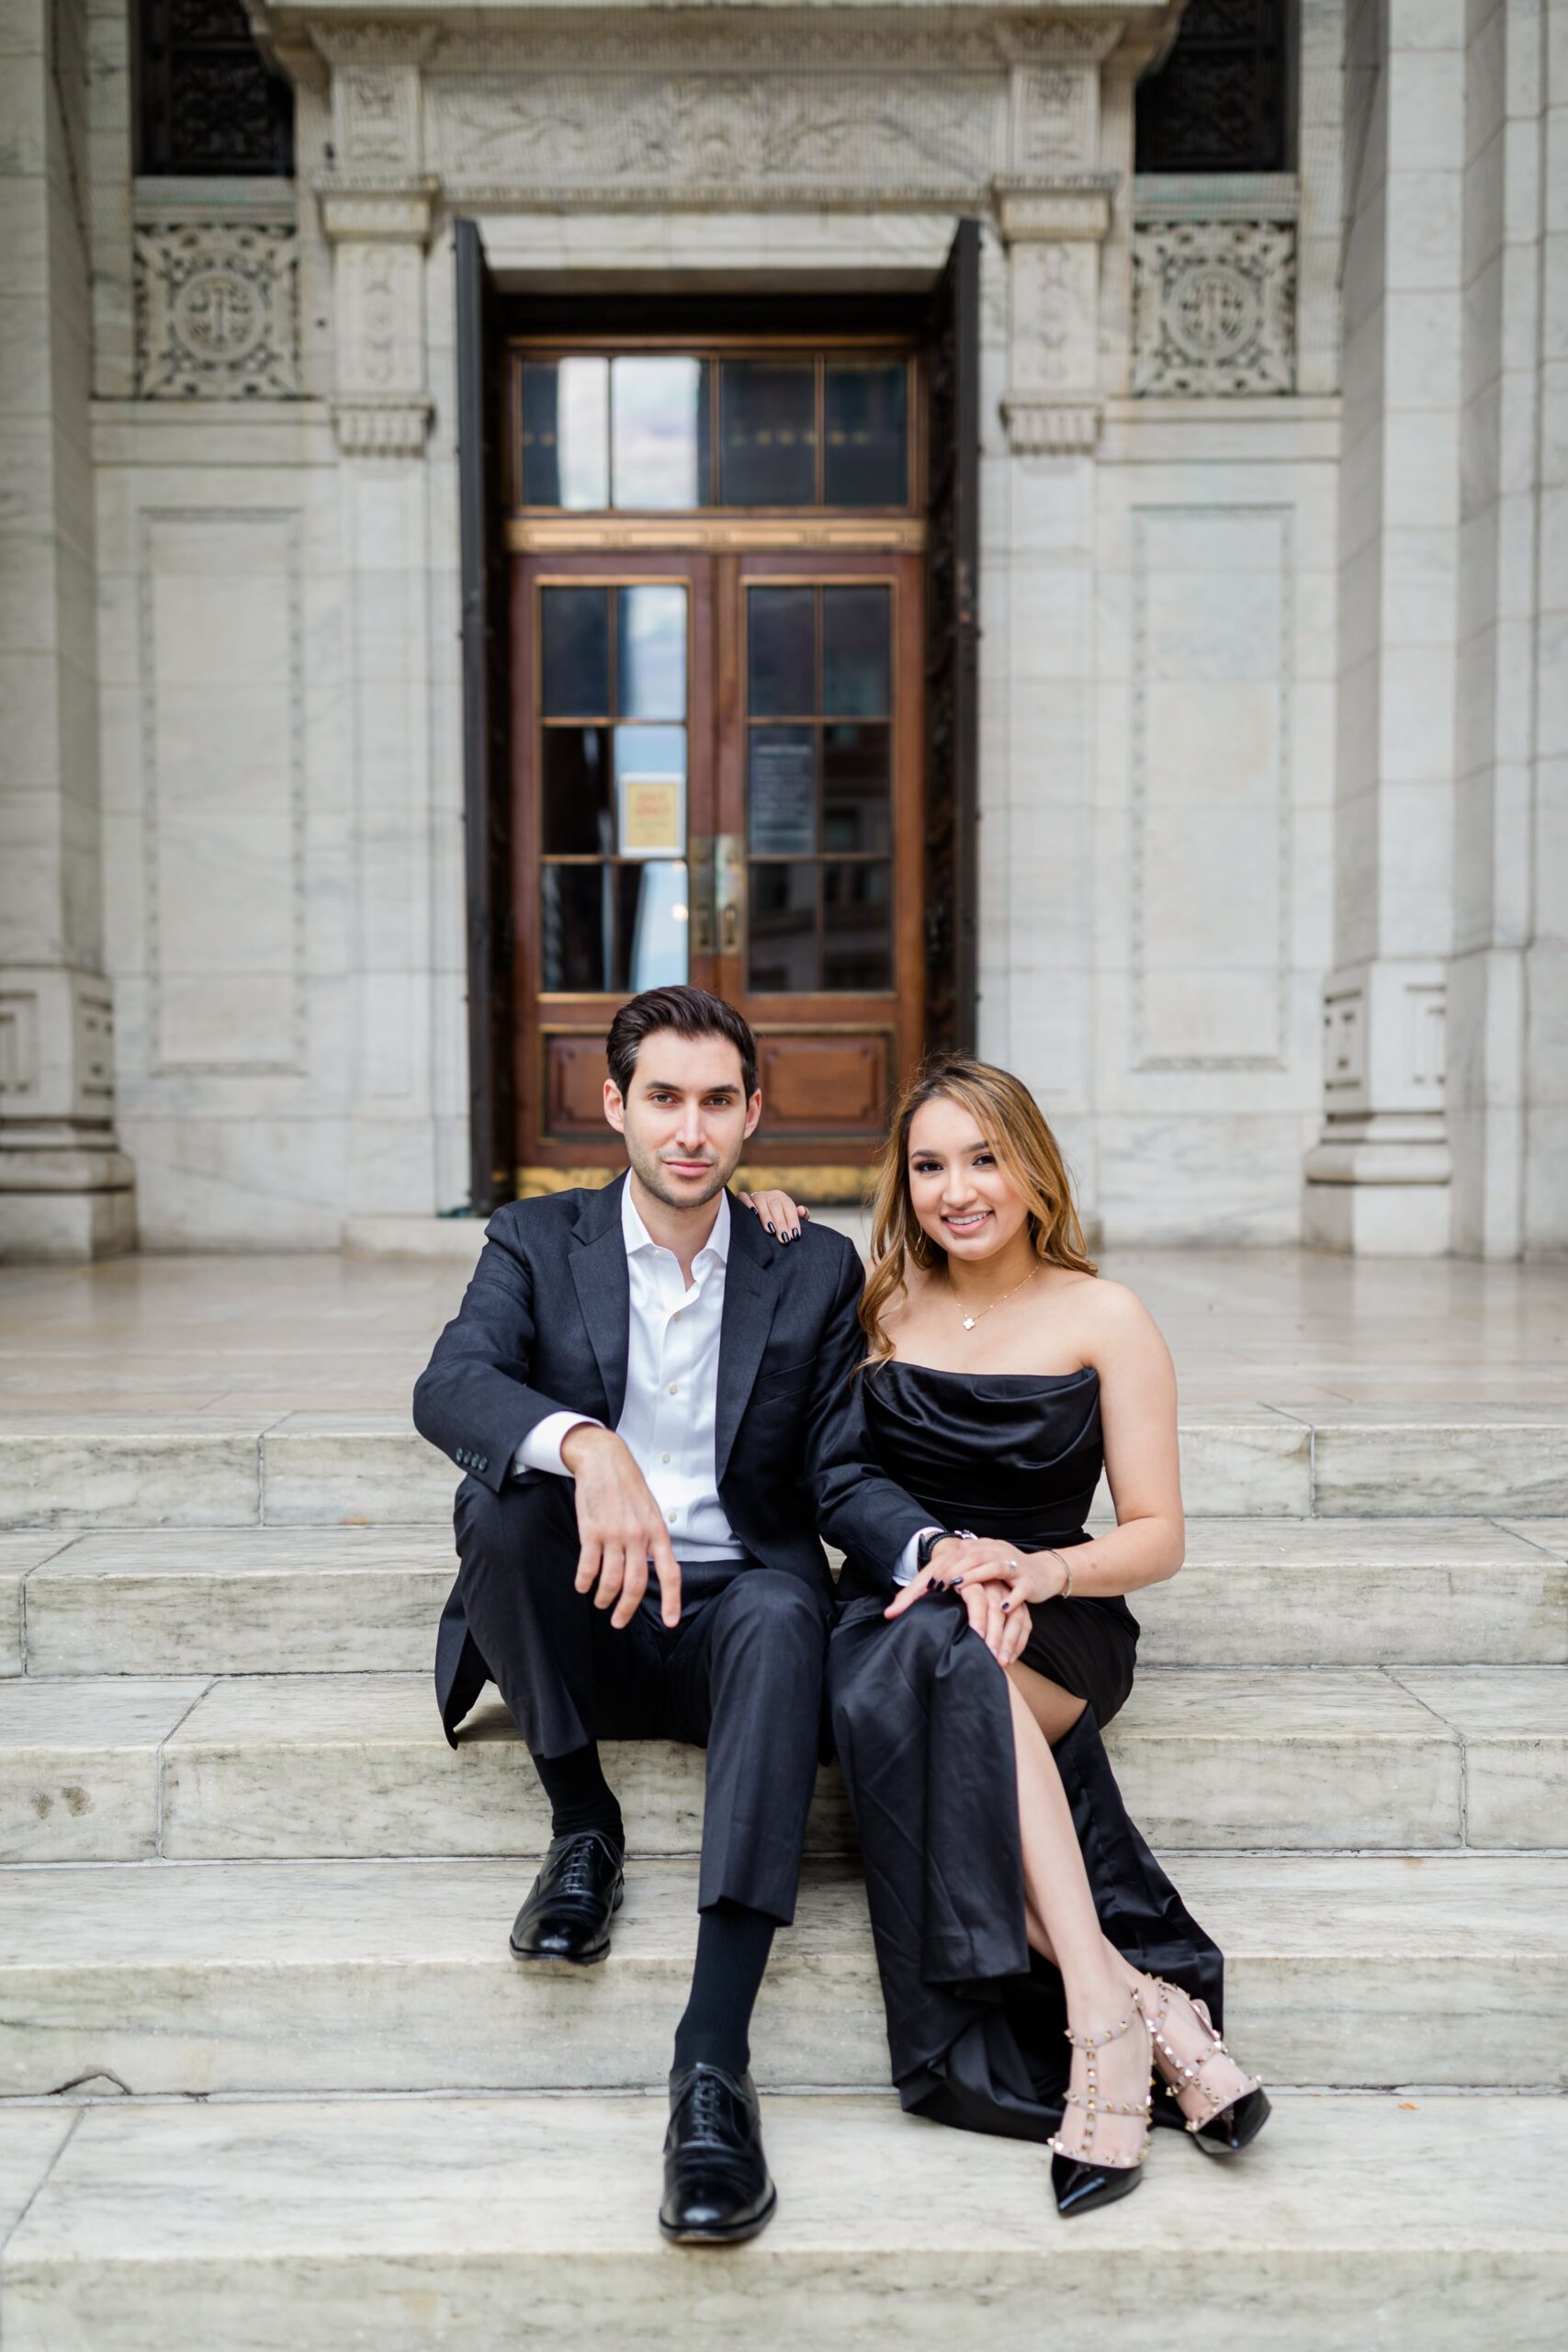 New York Public Library Wedding & Engagement - Larisa Shorina Photography